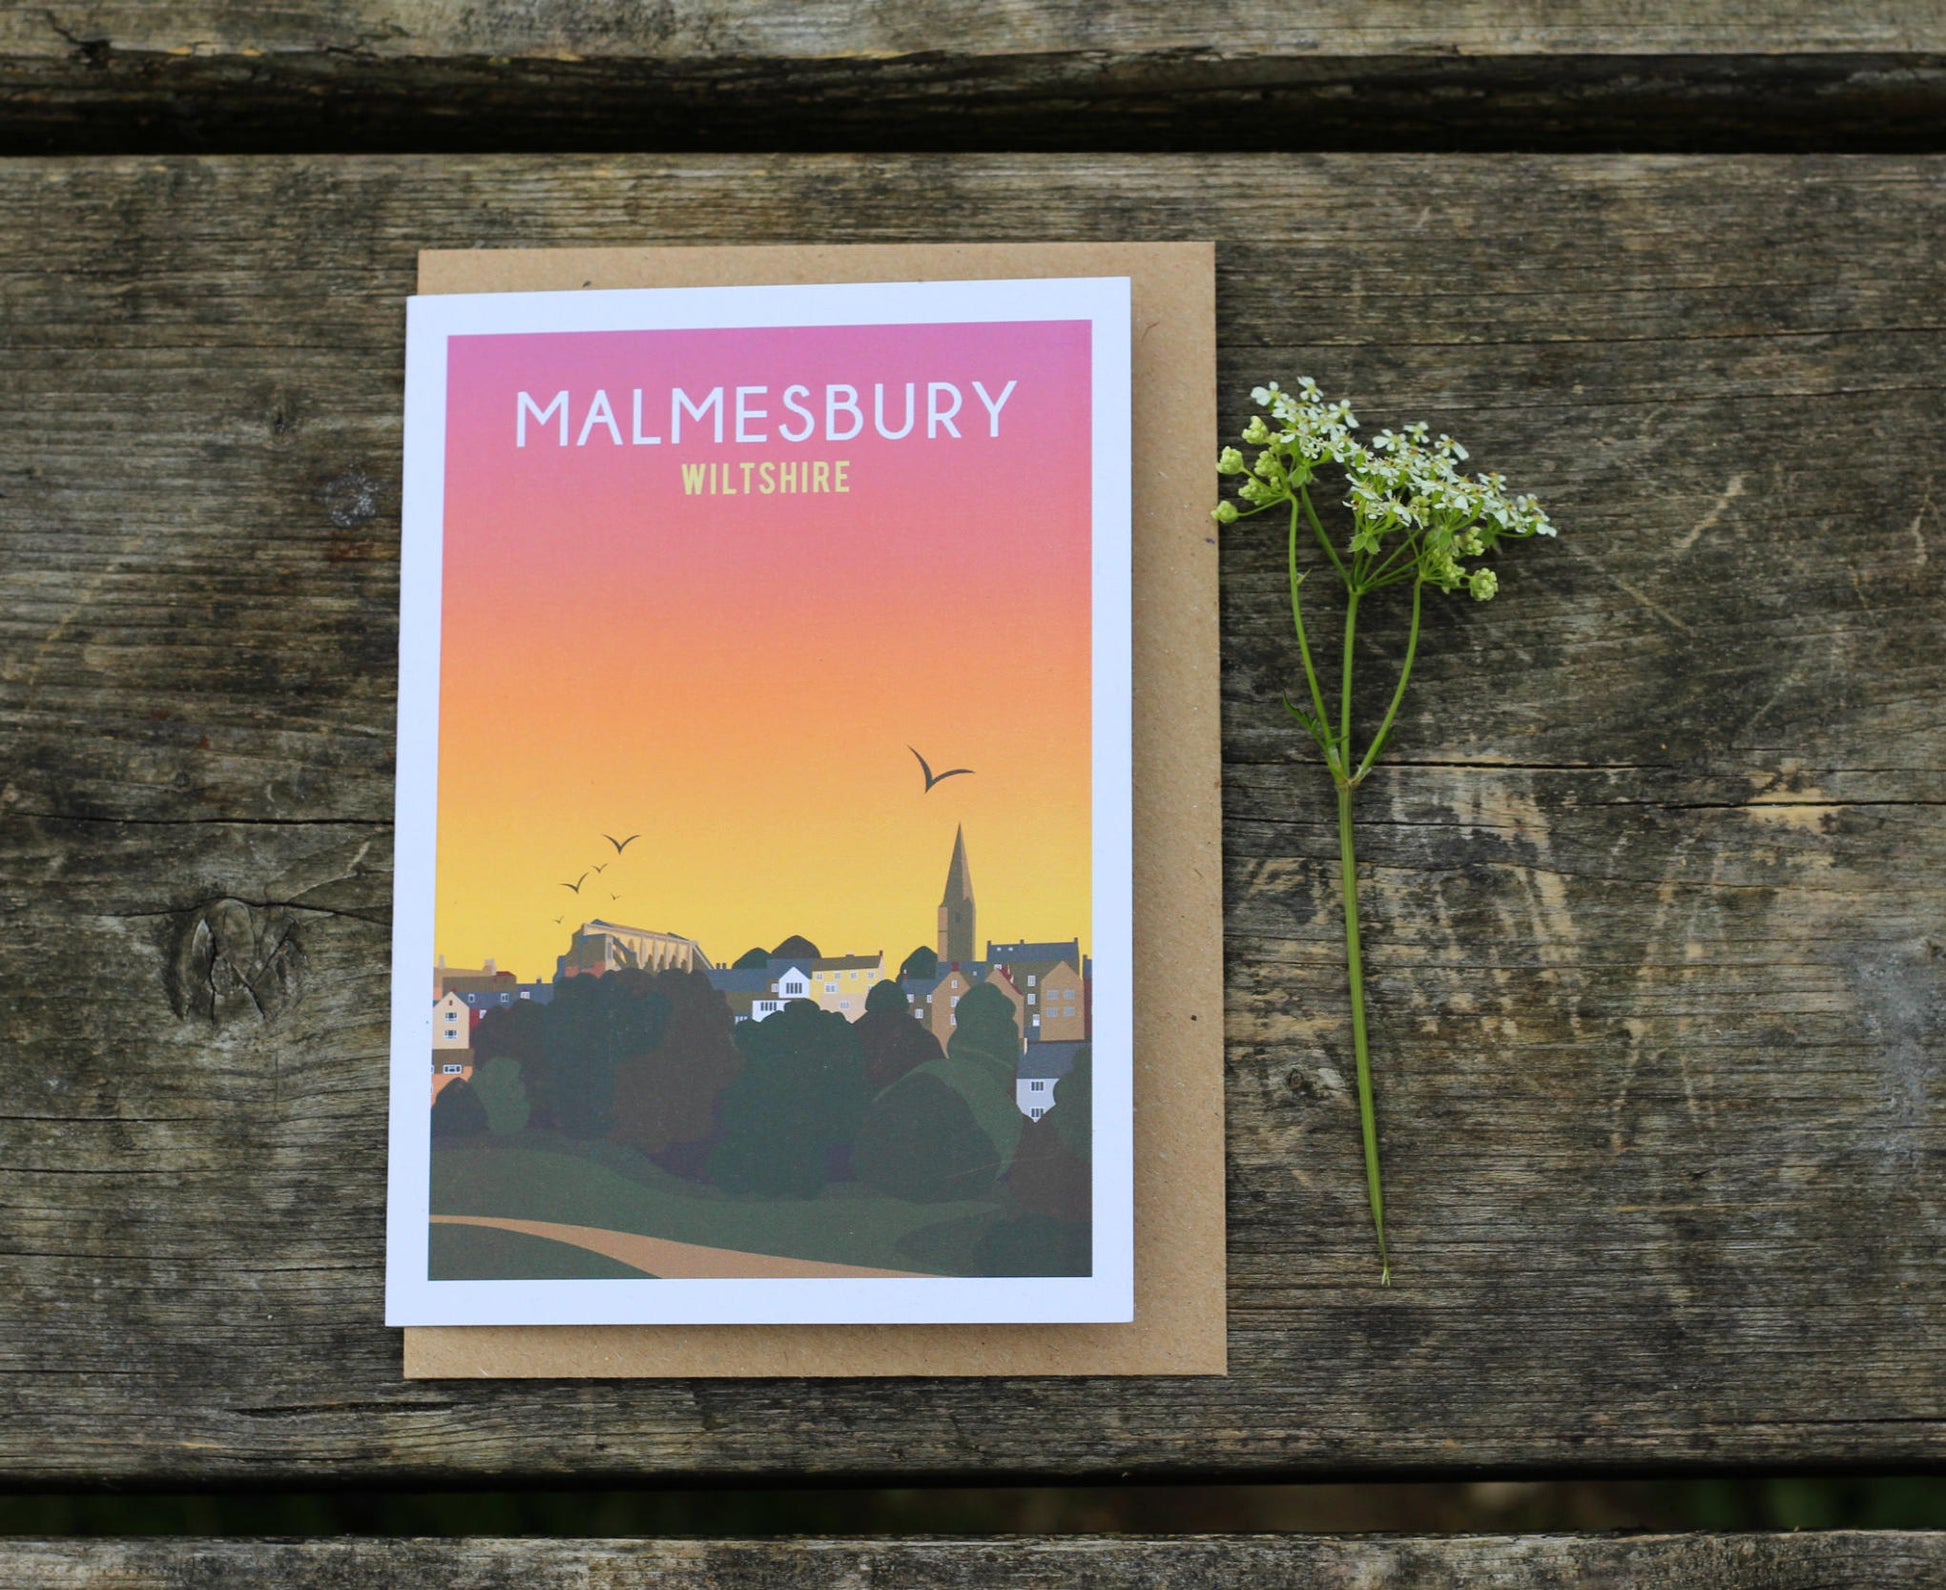 Malmesbury Sunset Greeting Card on table